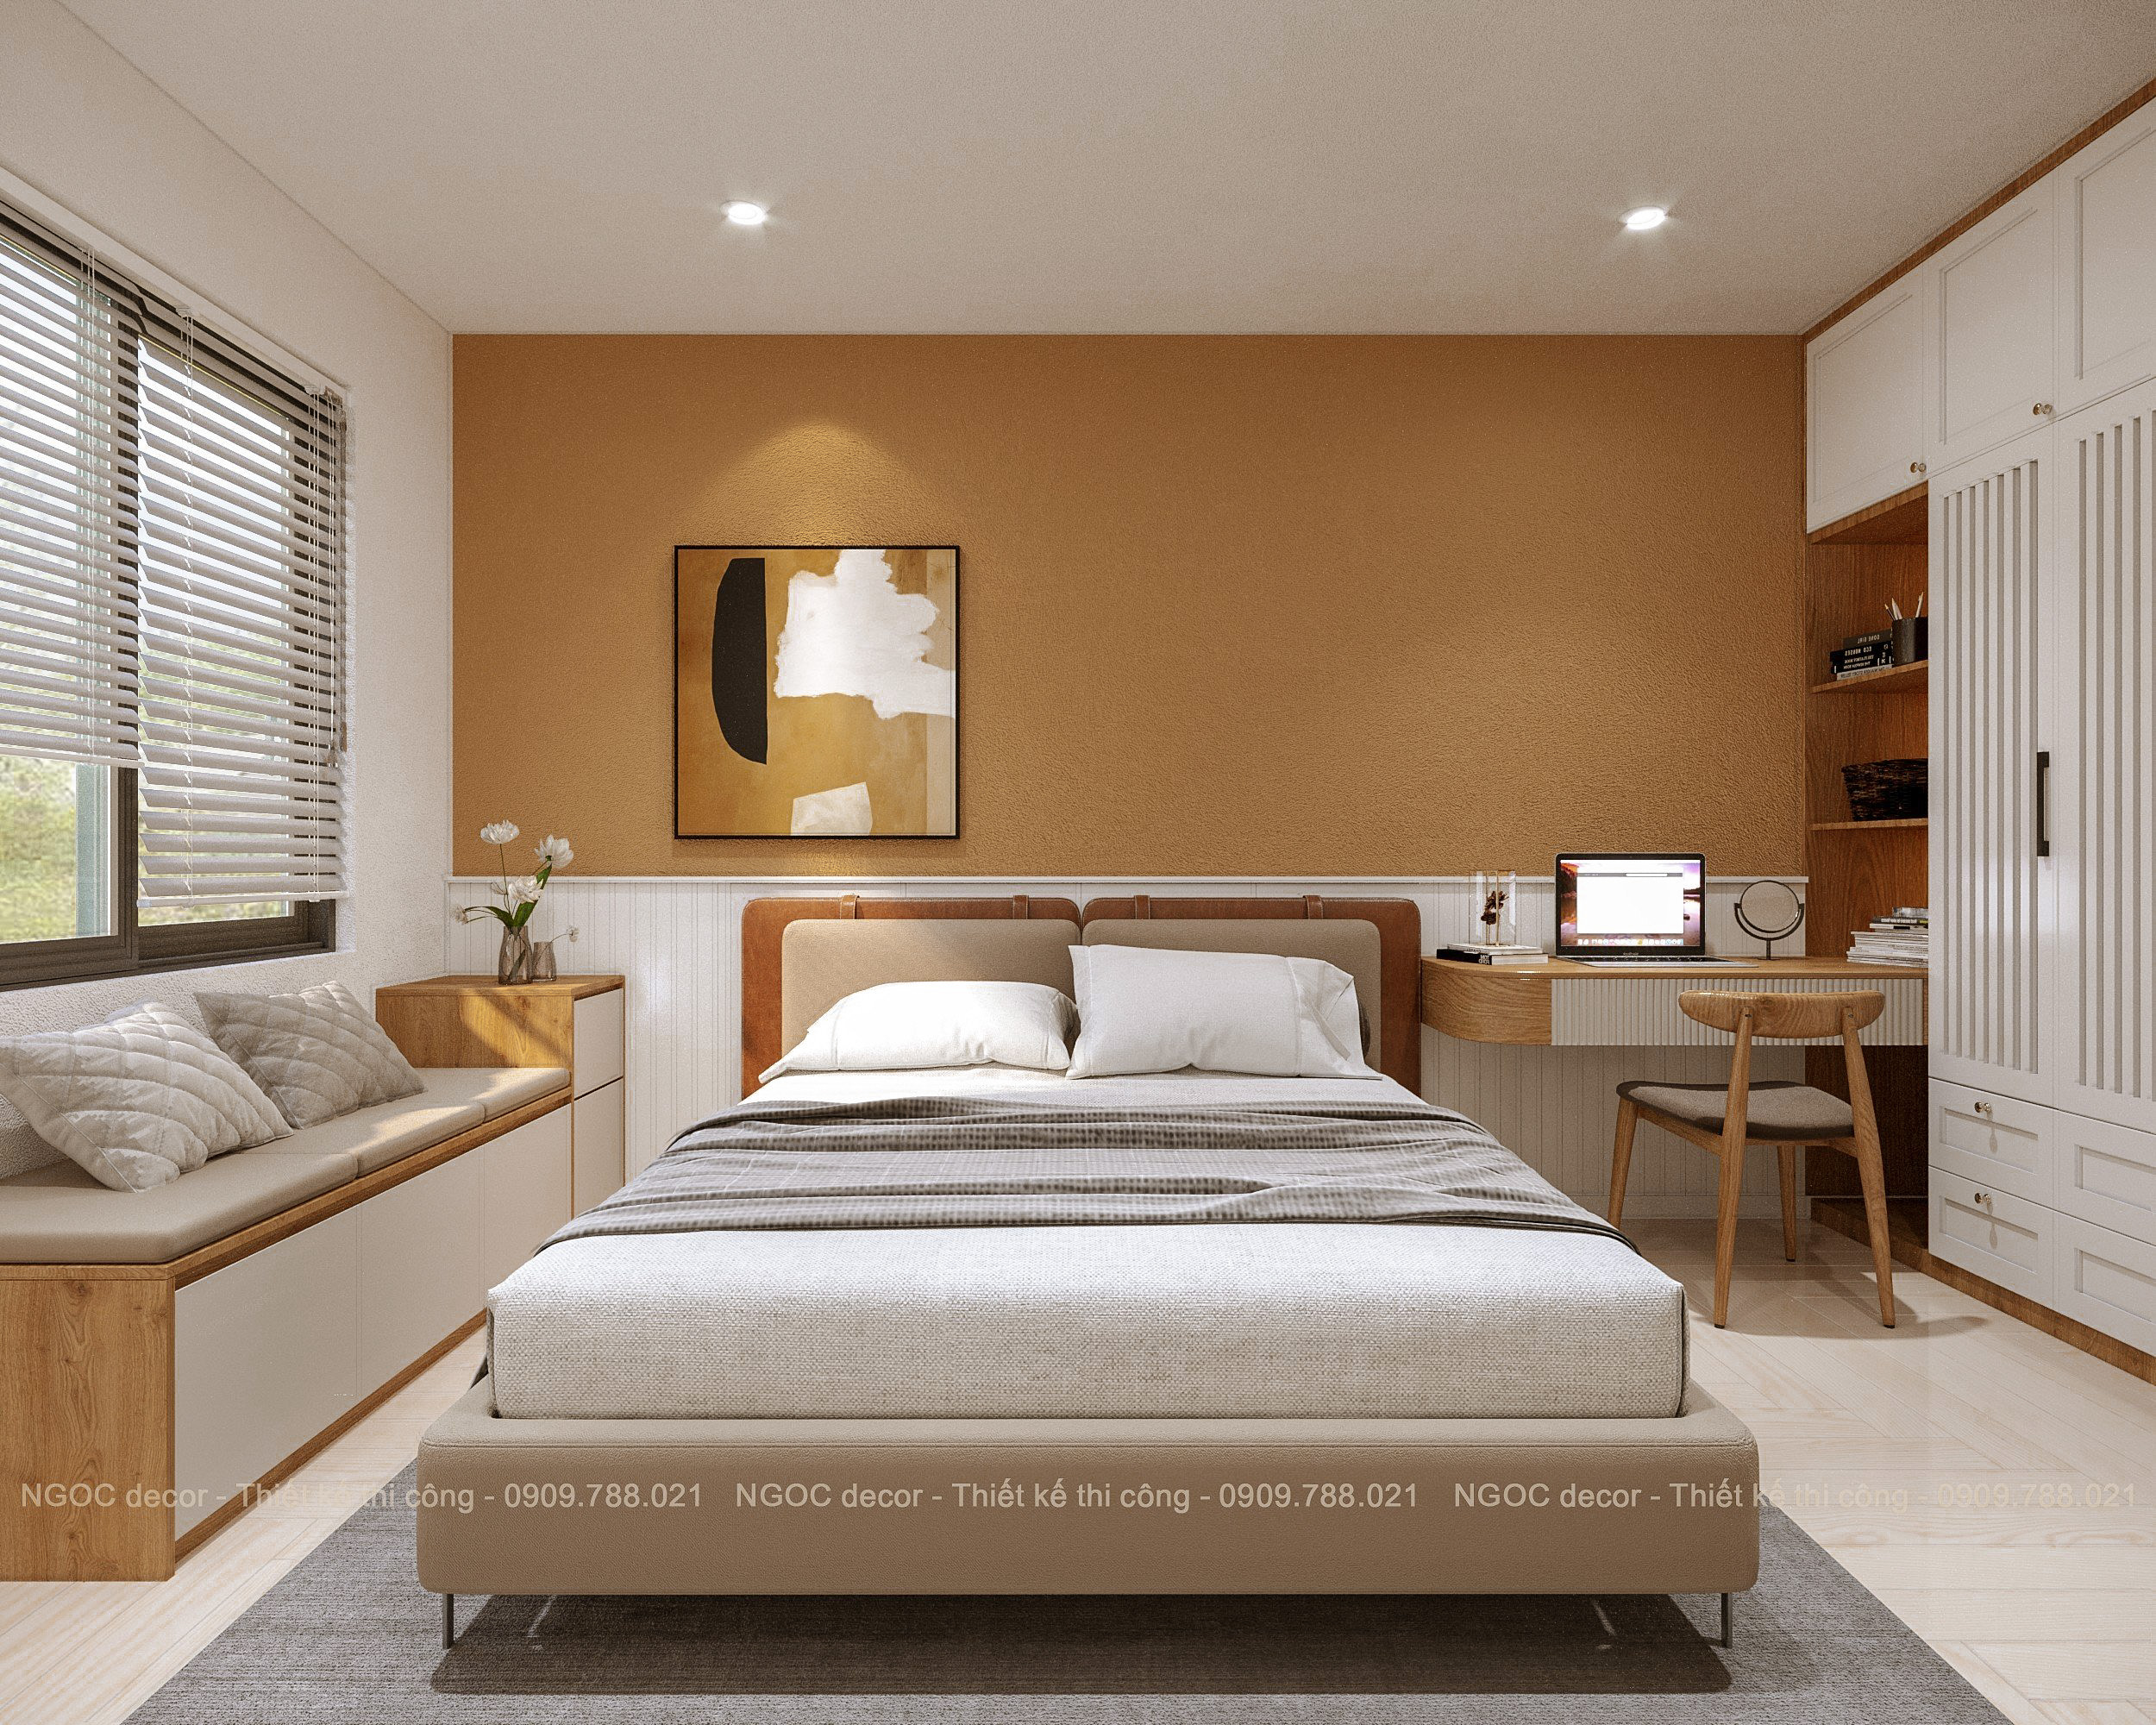 Giải pháp nội thất của Ngoc Decor giúp bạn tối ưu chi phí mà vẫn đảm bảo chất lượng tốt nhất